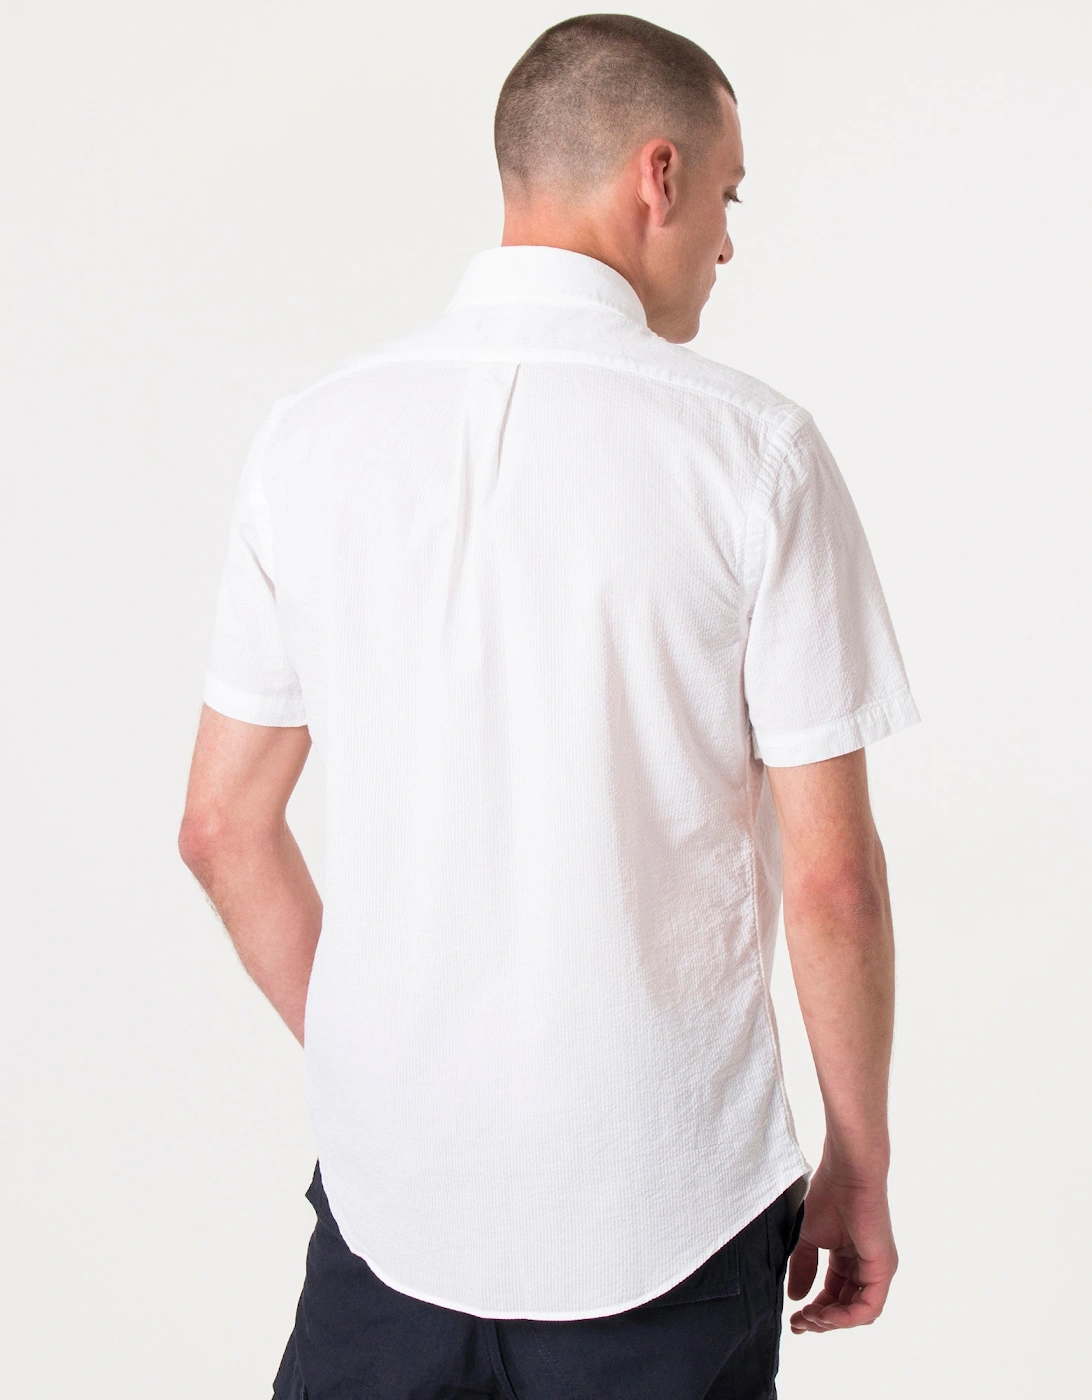 Custom Fit Short Sleeve Lightweight Shirt